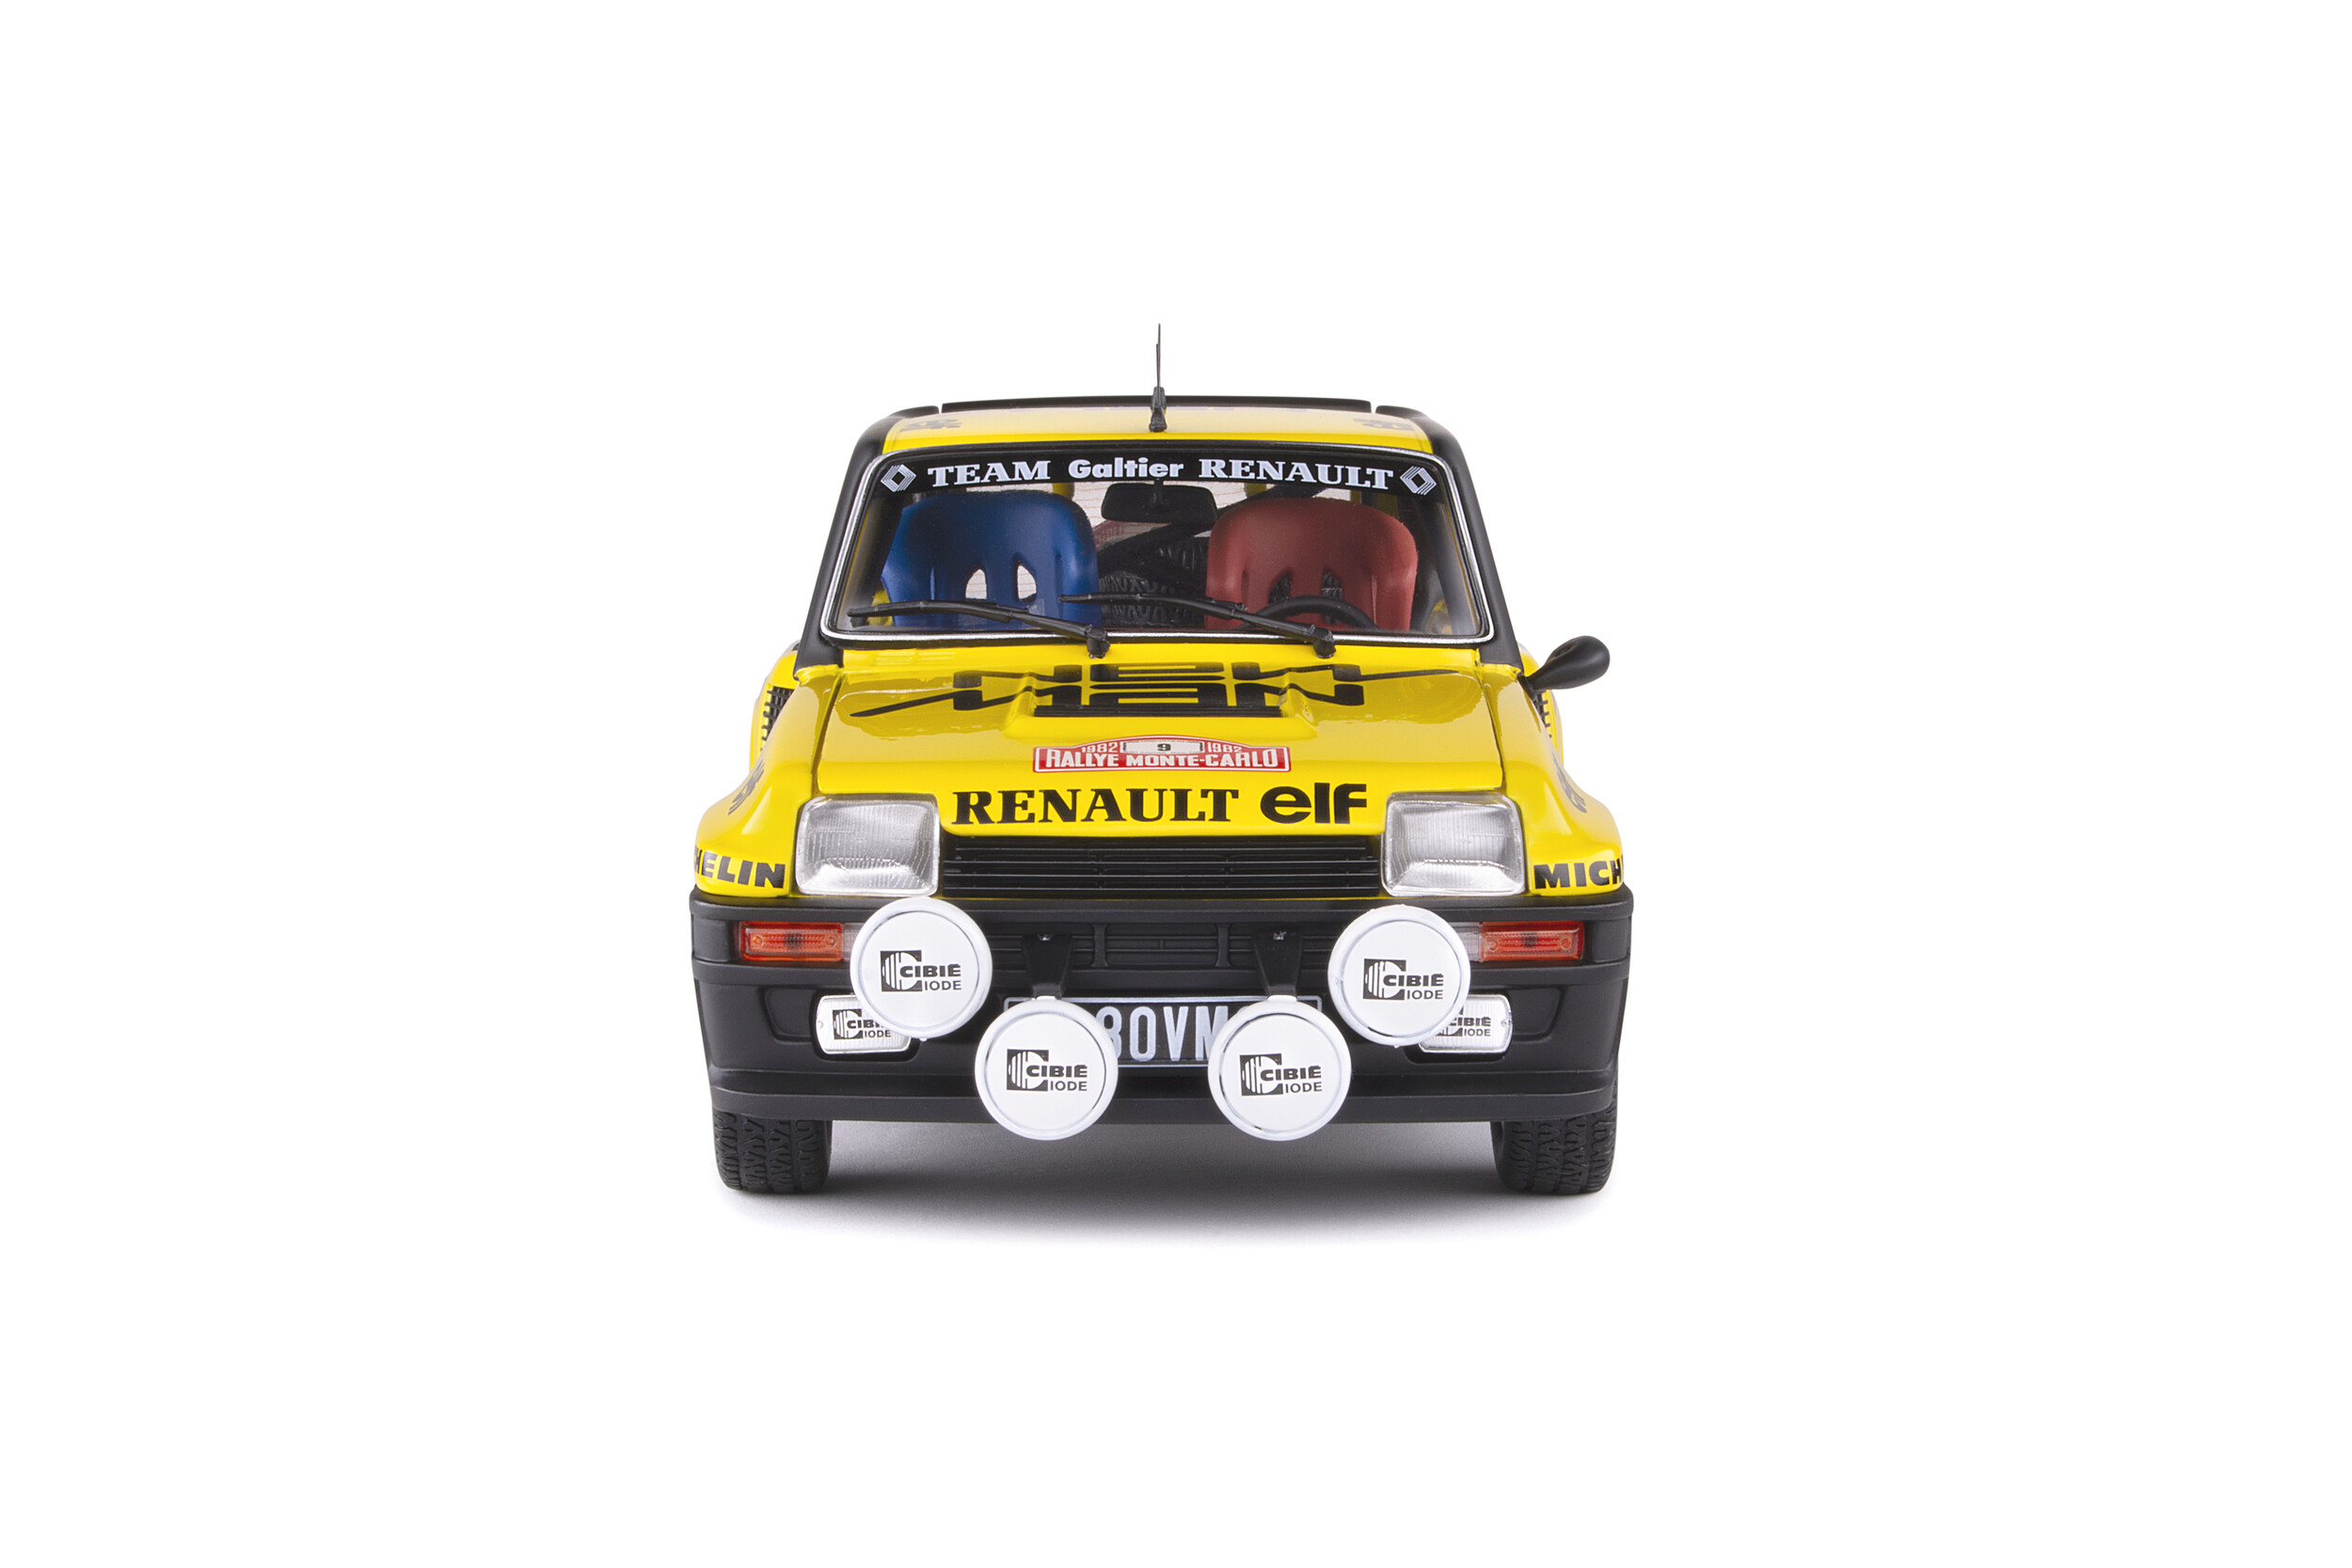 DECALC DECALS CALCA1 43 RENAULT 5 ALPINE N° 90 Rallye WRC monte carlo 1980